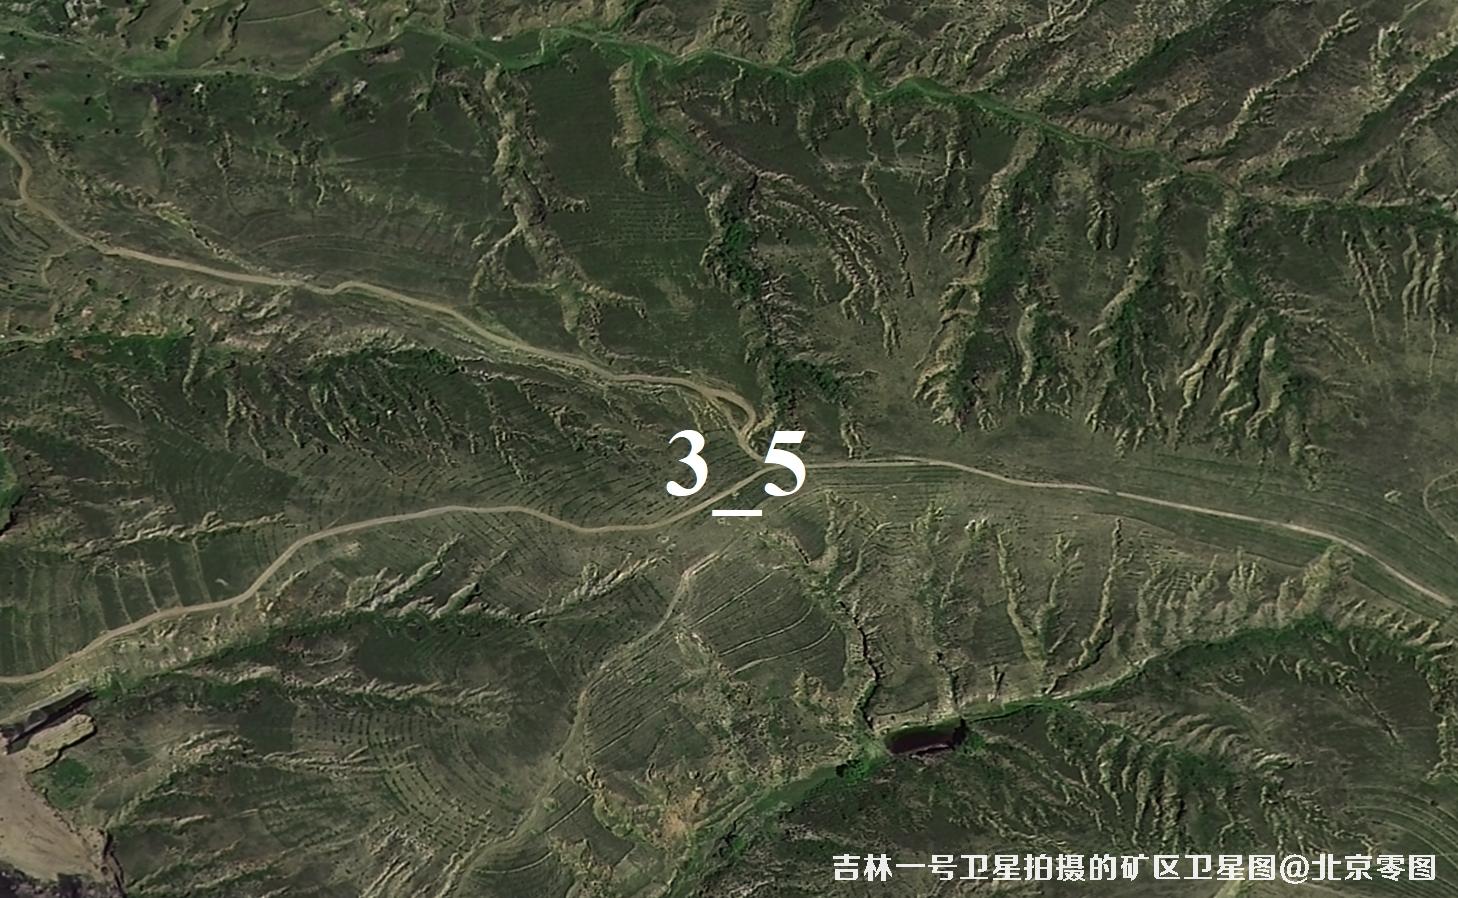 国产0.75米分辨率卫星拍摄的高清影像图